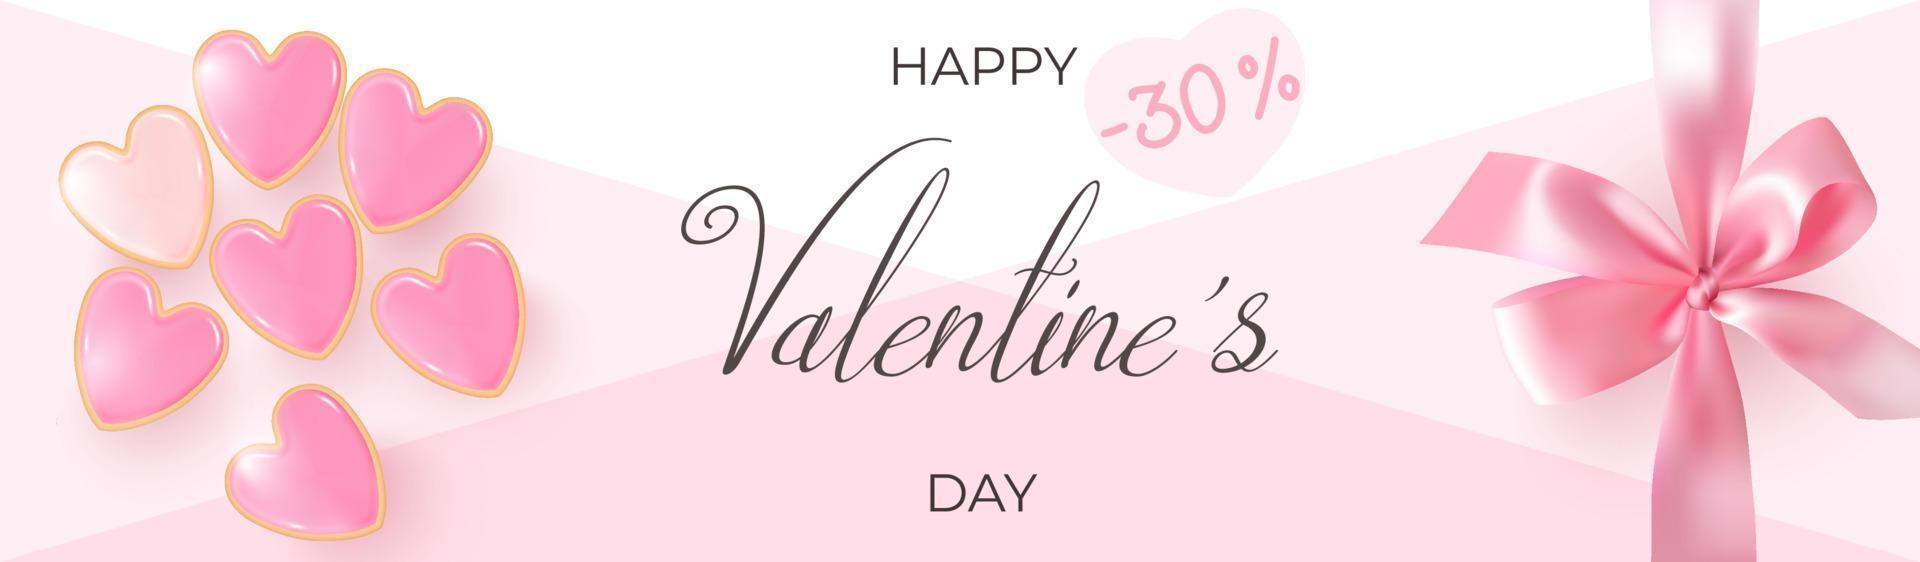 banner de descuento con galletas en forma de corazón y lazo de regalo rosa para el día de san valentín. vector